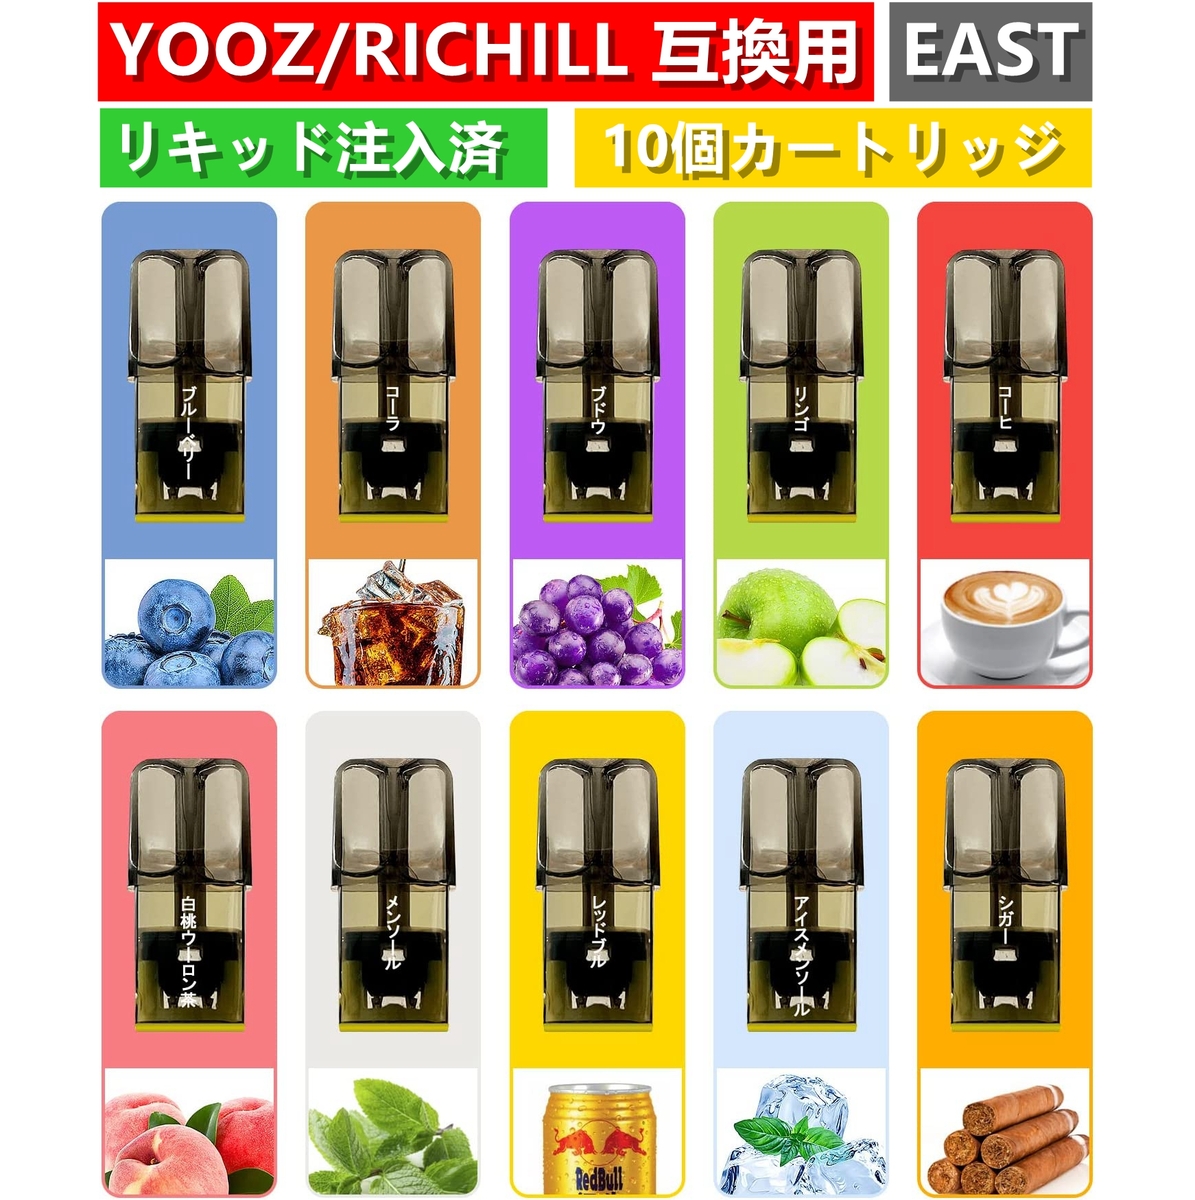 【楽天市場】YOOZ互換用 yooz richill 10個 pods リキッド 10風味 